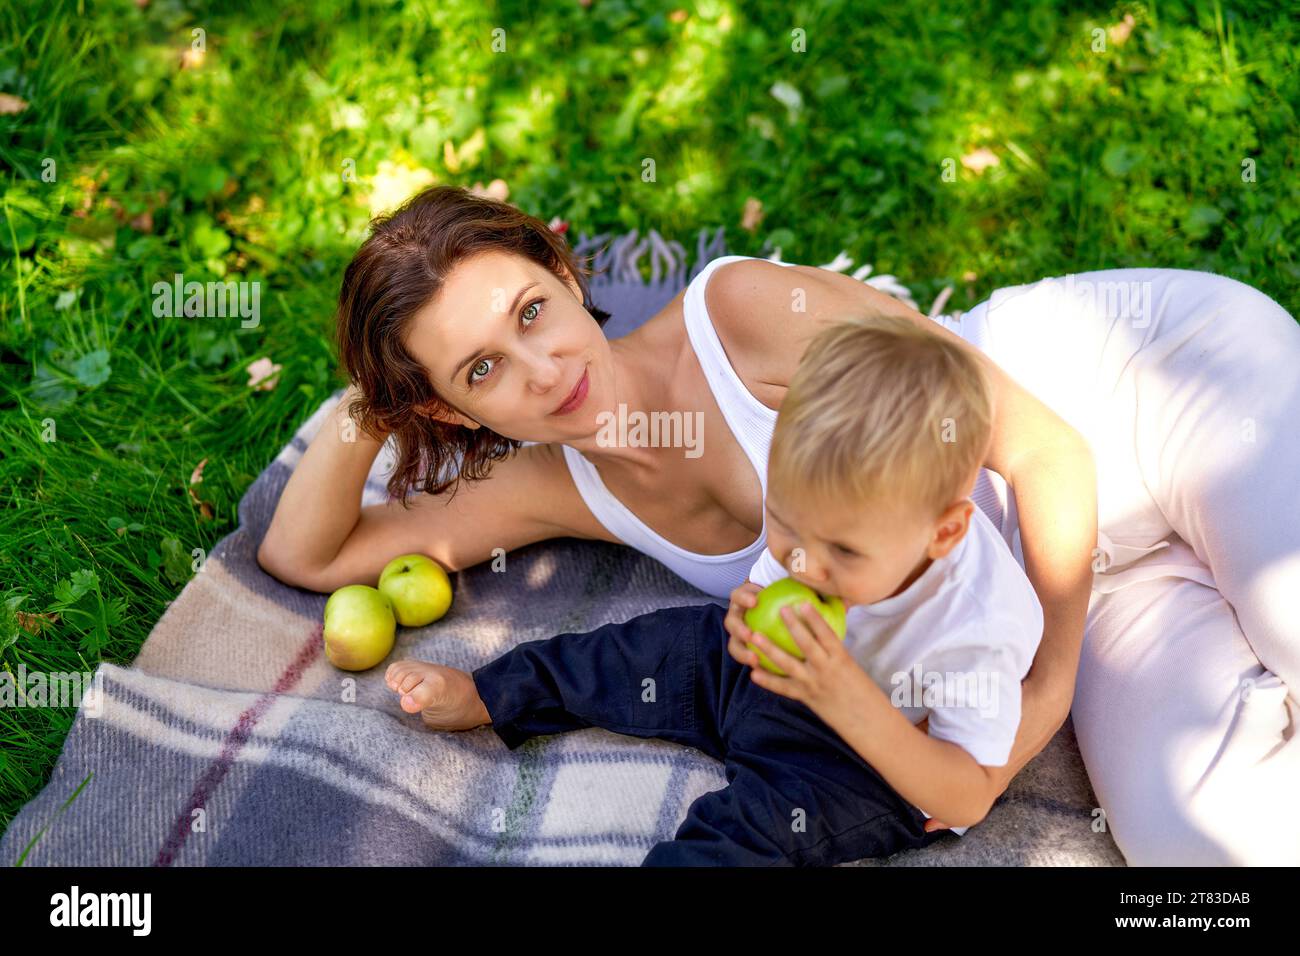 Eine junge europäische Mutter mit ihrem niedlichen kleinen Sohn, der auf dem Bett liegt, kariert und in die Kamera lächelt. Ein Kind hat einen gebissenen grünen Apfel in der Hand. Das Konzept der Erziehung und des gemeinsamen Zeitverhaltens in der Natur. Das Glück der Mutterschaft, Blick von oben Stockfoto